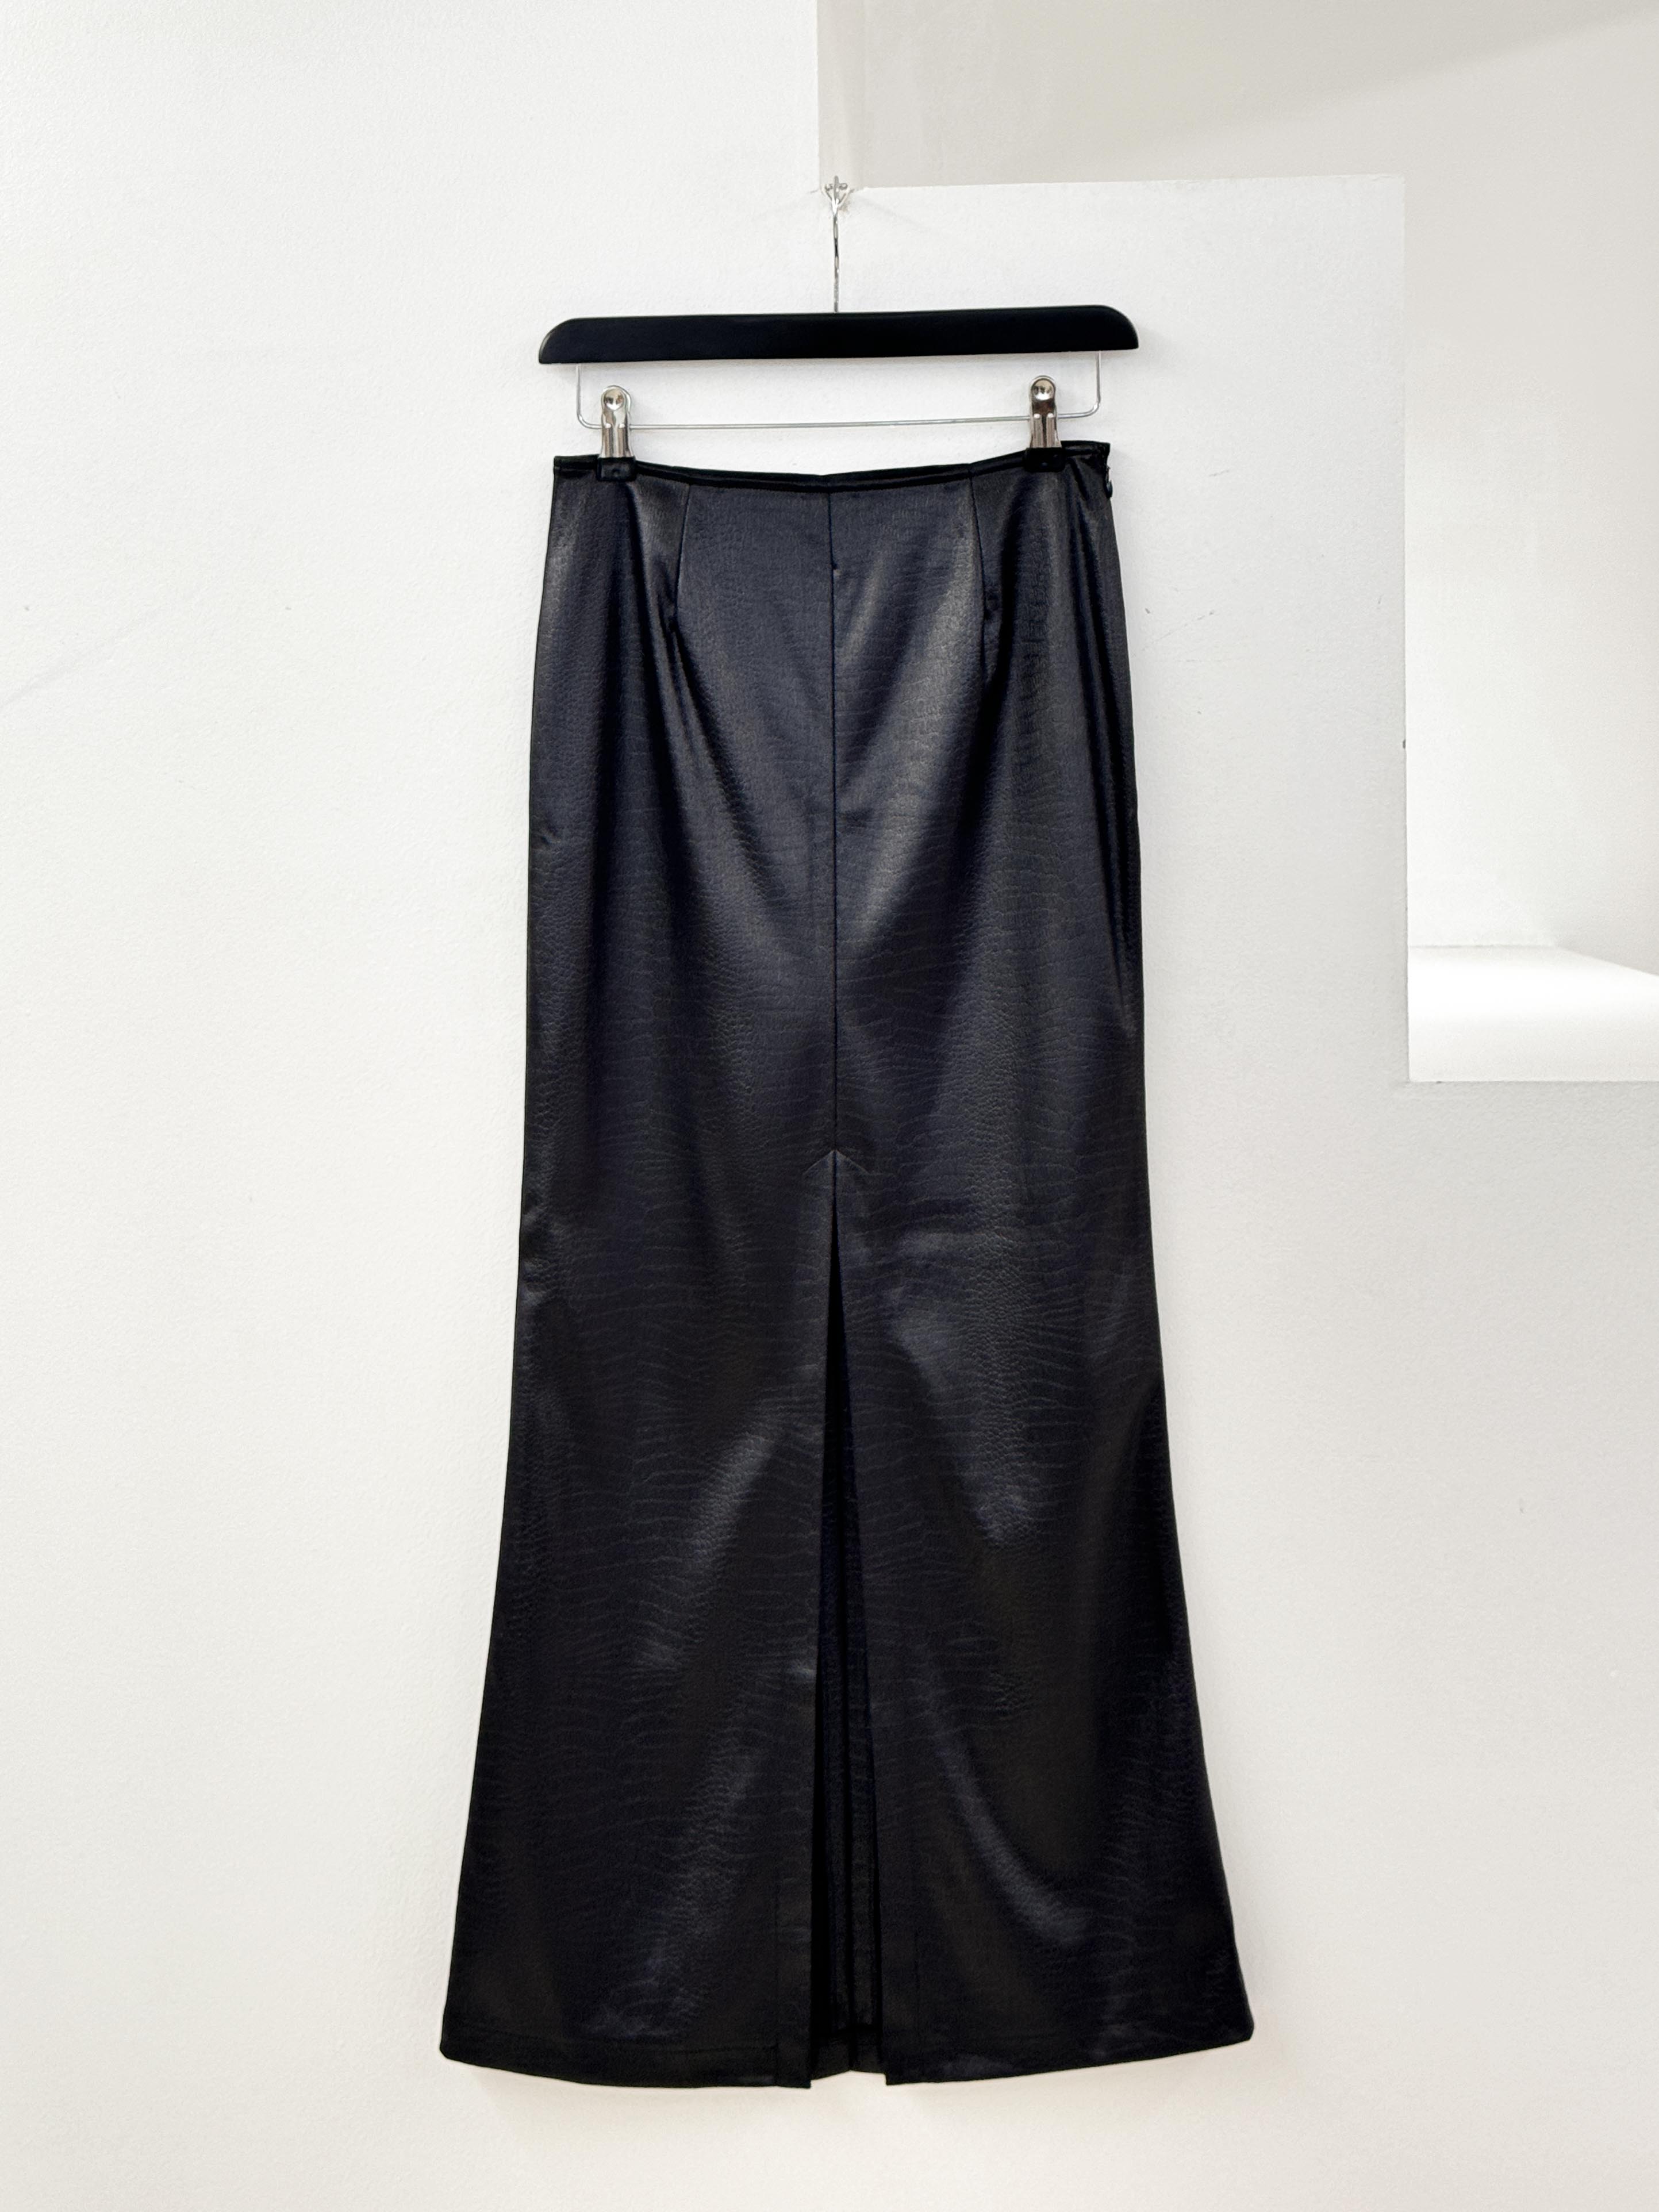 Black long skirt 26inch